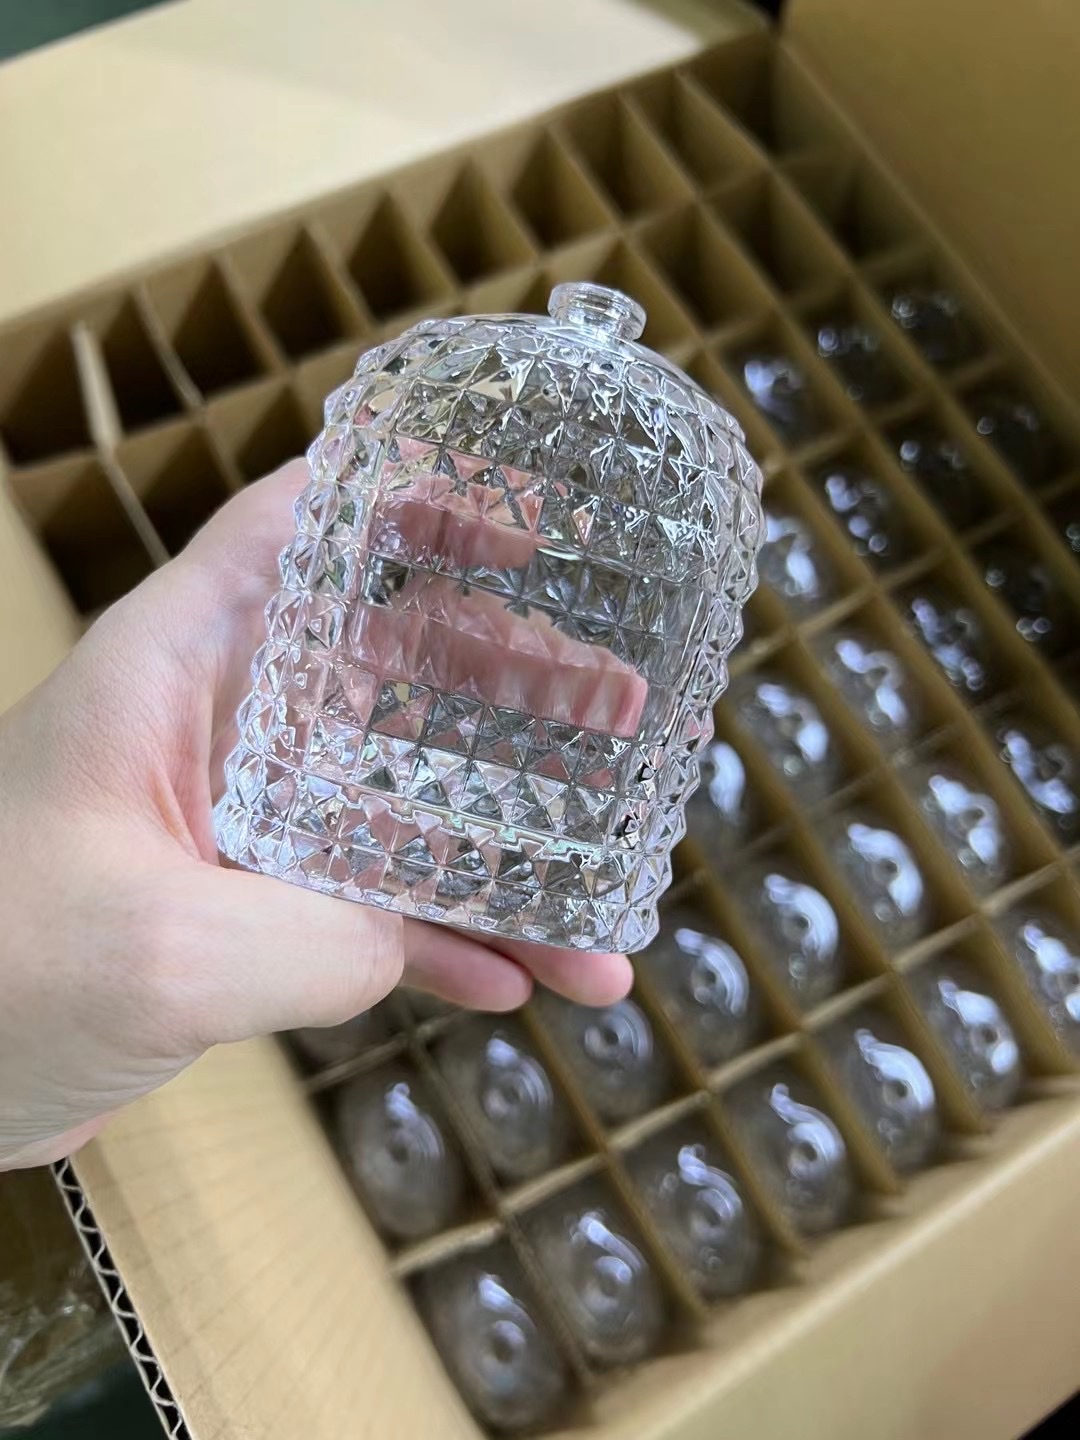 厚德玻璃厂 钻石香水瓶 高档精白料香水玻璃瓶 来样定做 喷色 电镀 蒙砂等后加工 logo